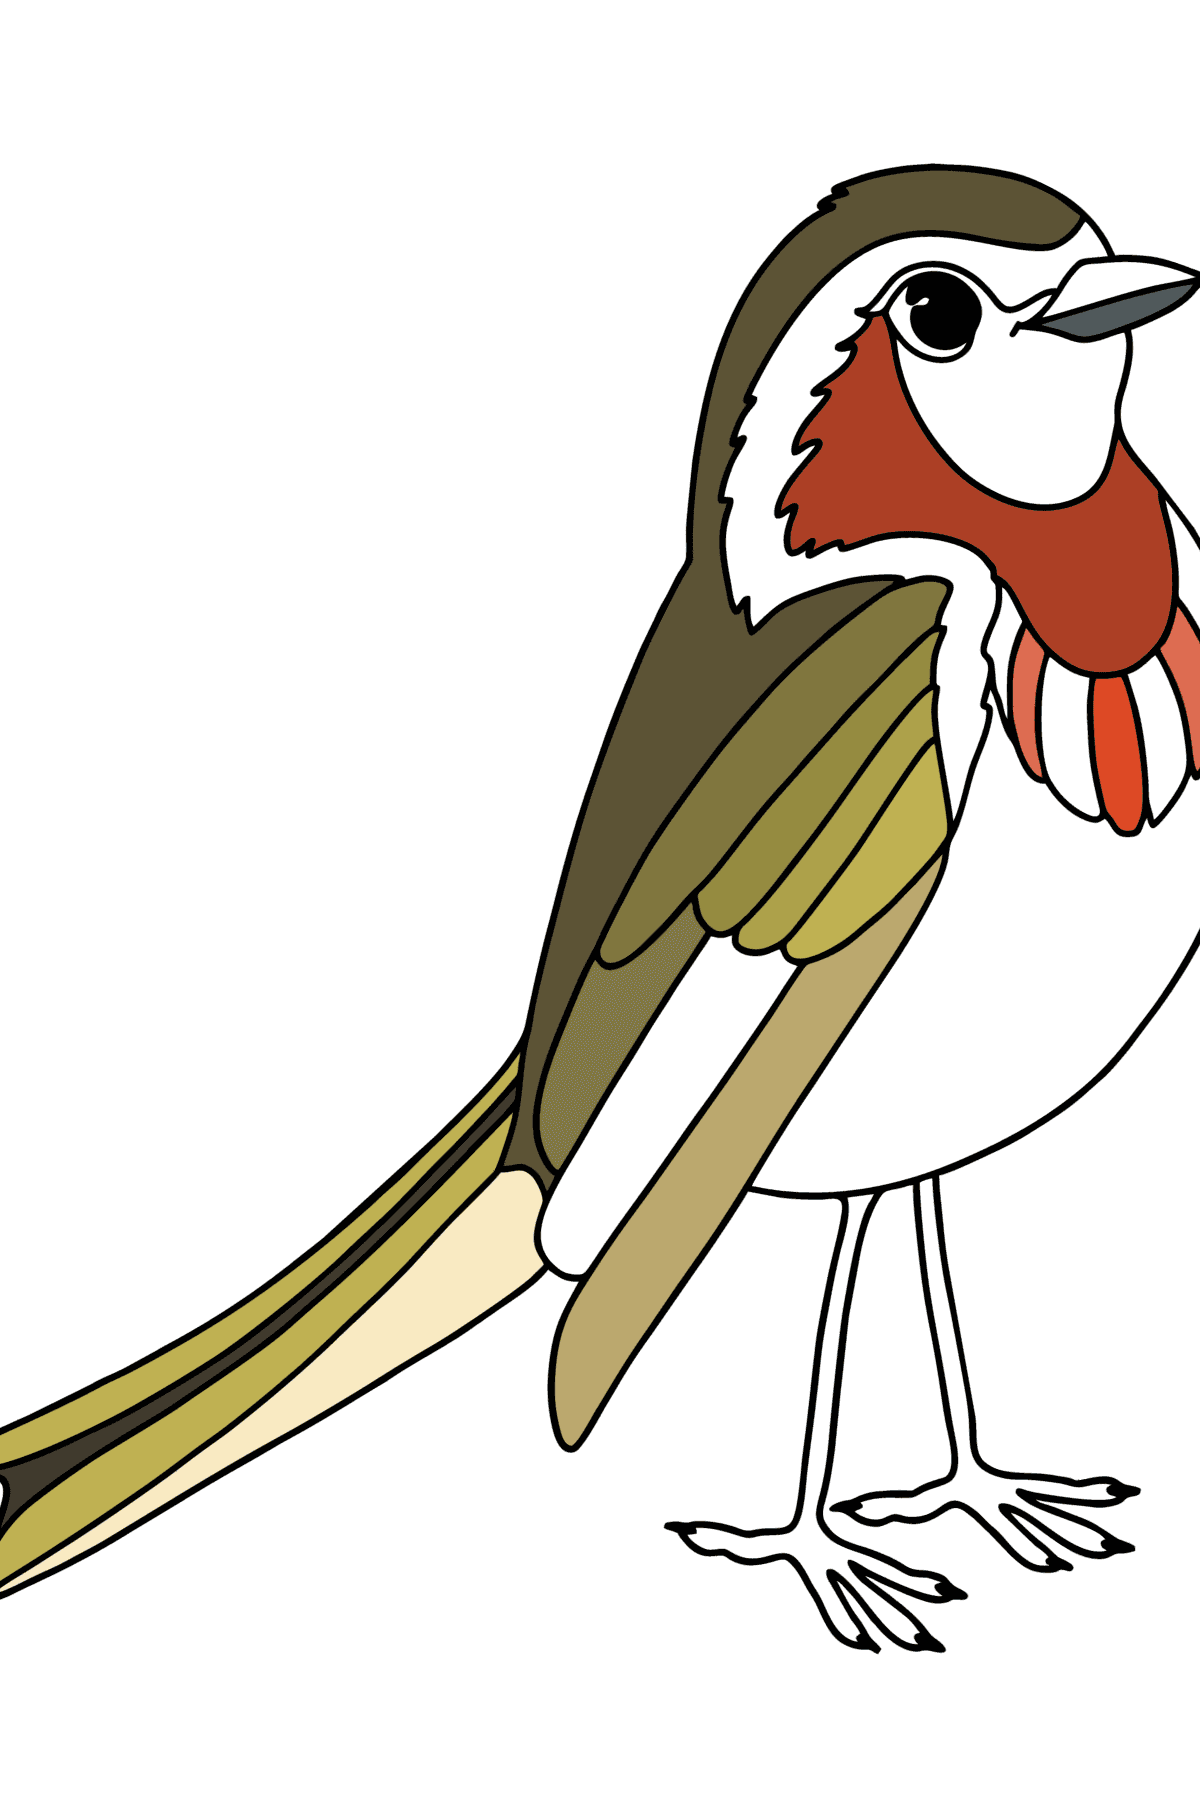 Раскраска Птица Зяблик - Картинки для Детей